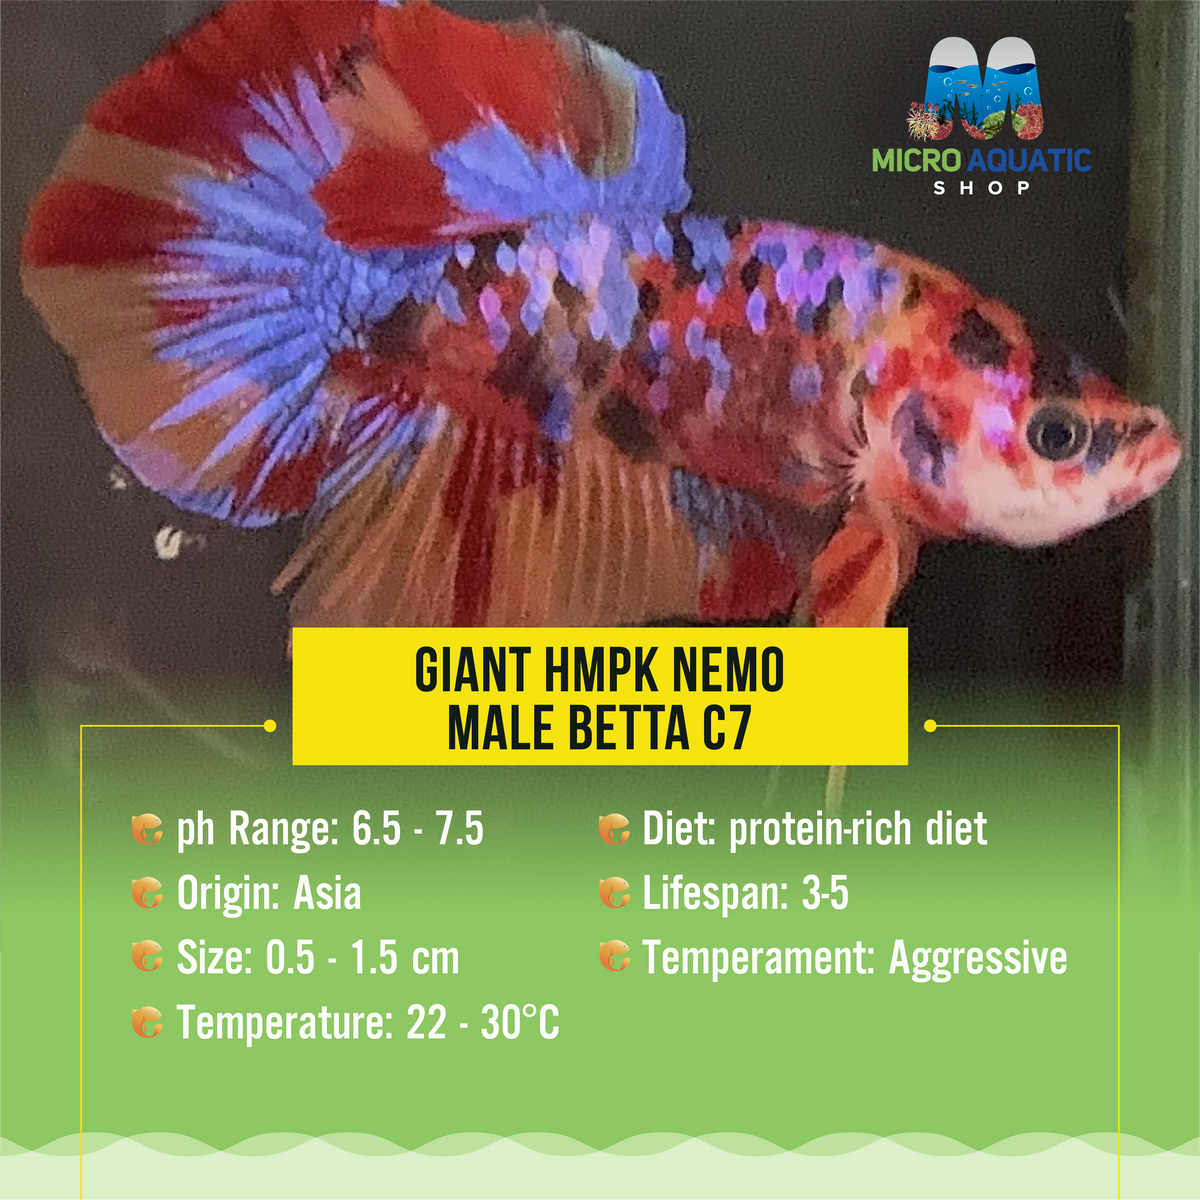 Giant HMPK Nemo Male Betta C7